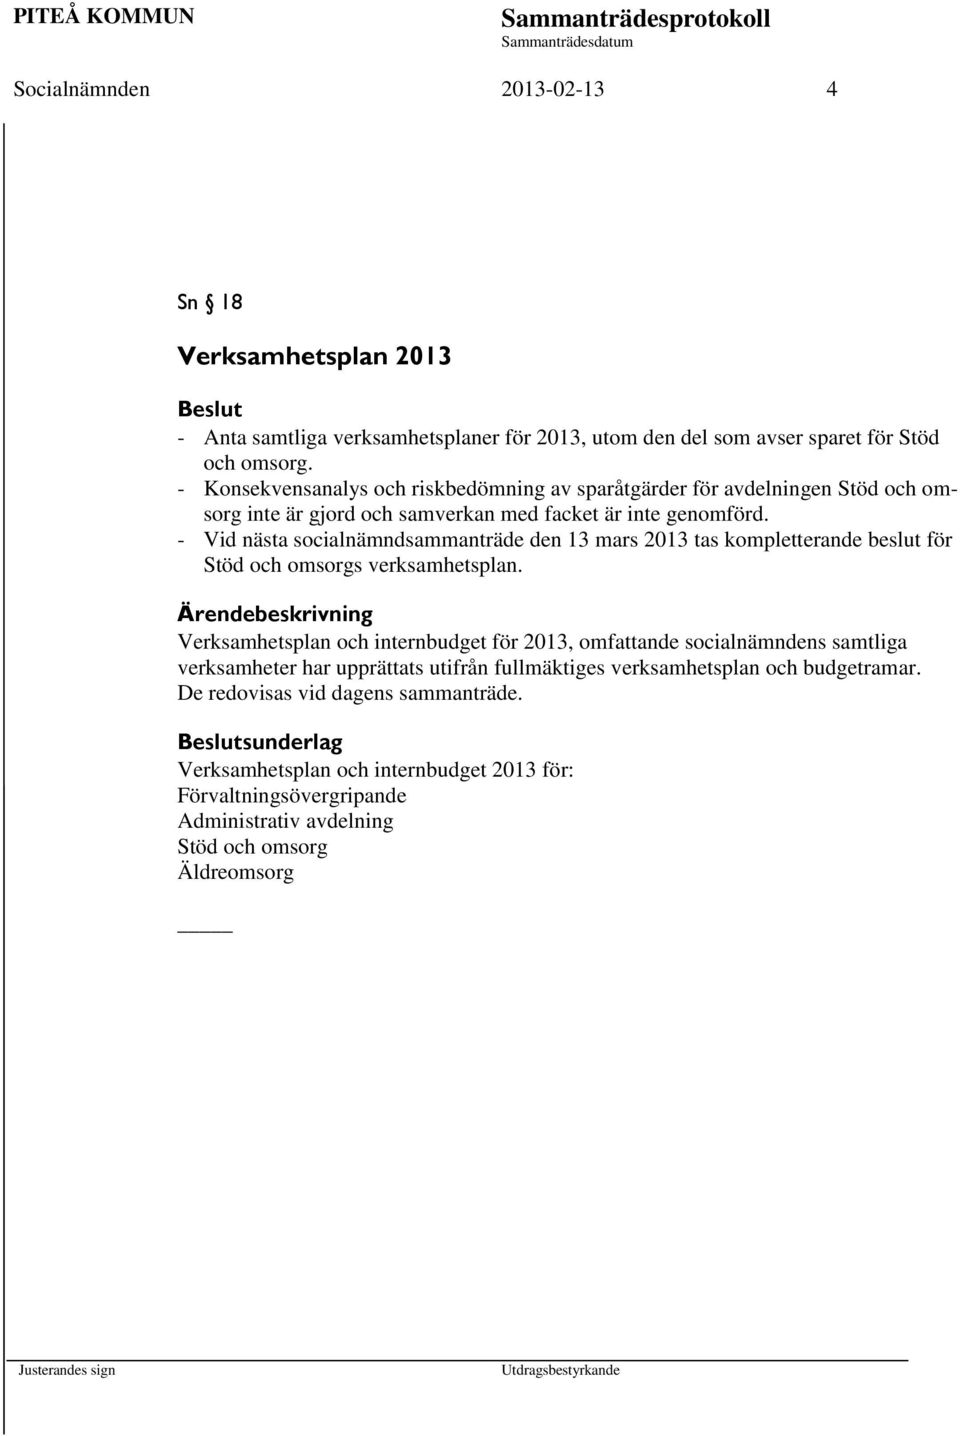 - Vid nästa socialnämndsammanträde den 13 mars 2013 tas kompletterande beslut för Stöd och omsorgs verksamhetsplan.